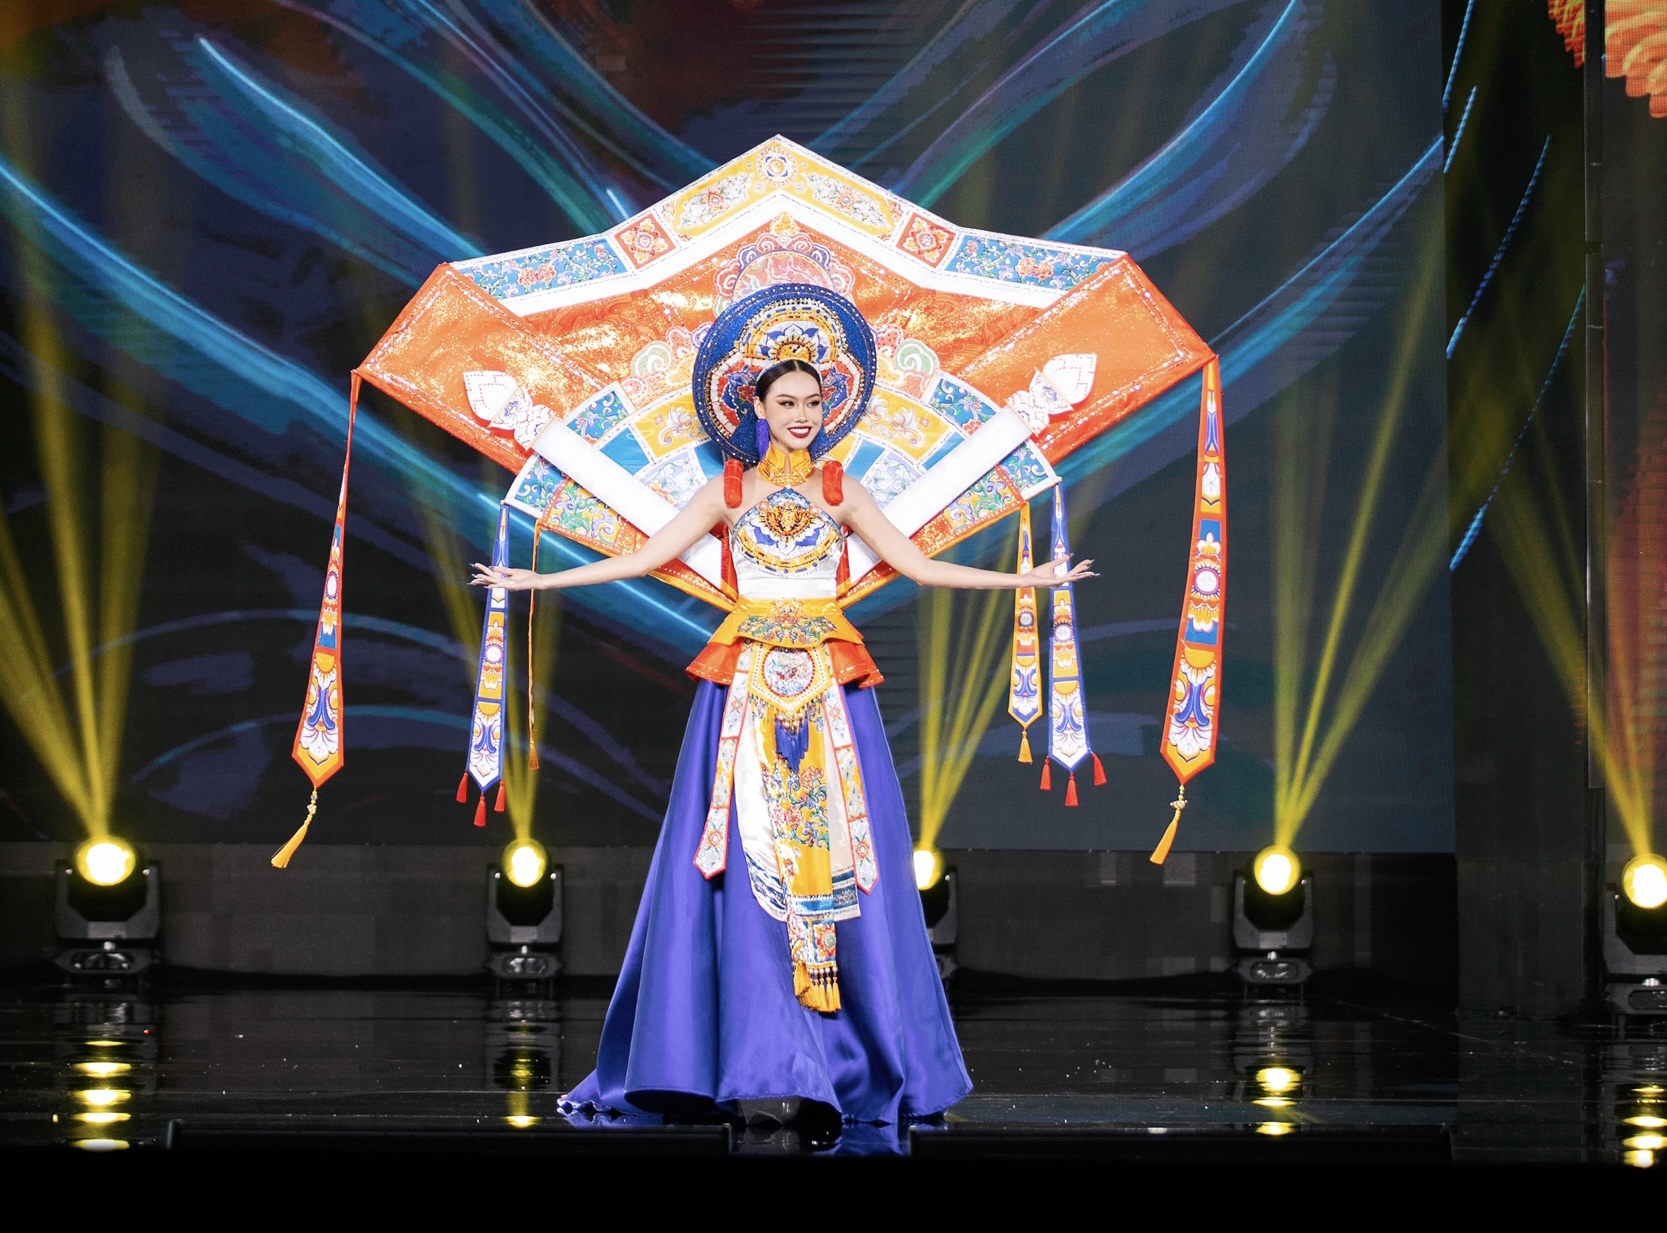 Đặng Hoàng Tâm Như trình diễn trang phục dân tộc lấy cảm hứng từ nghệ thuật Pháp lam Huế - 1